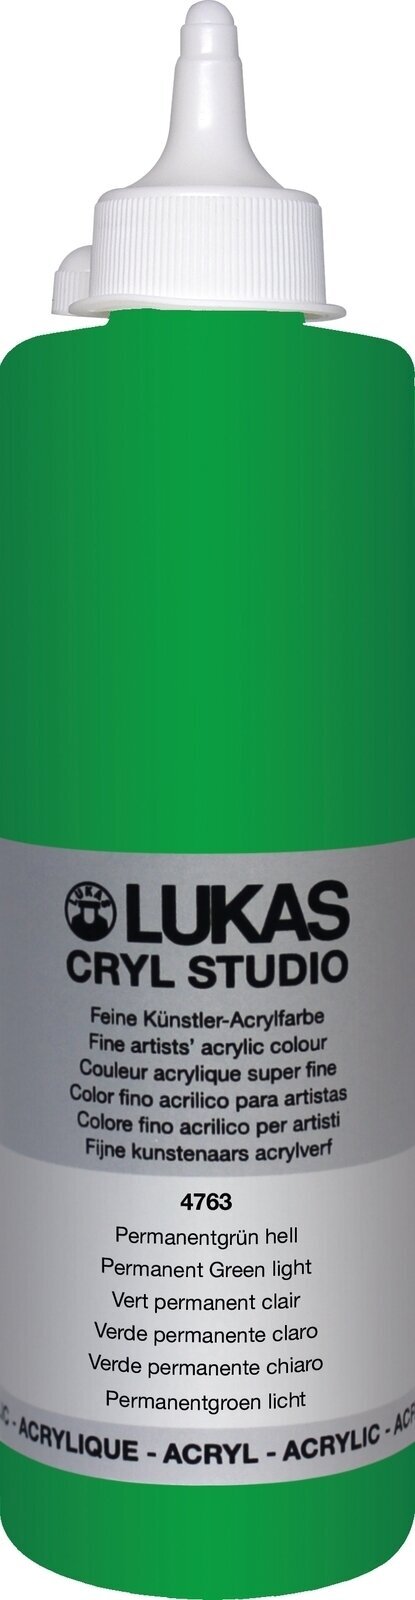 Peinture acrylique Lukas Cryl Studio Acrylic Paint Plastic Bottle Peinture acrylique Permanent Green Light 500 ml 1 pc